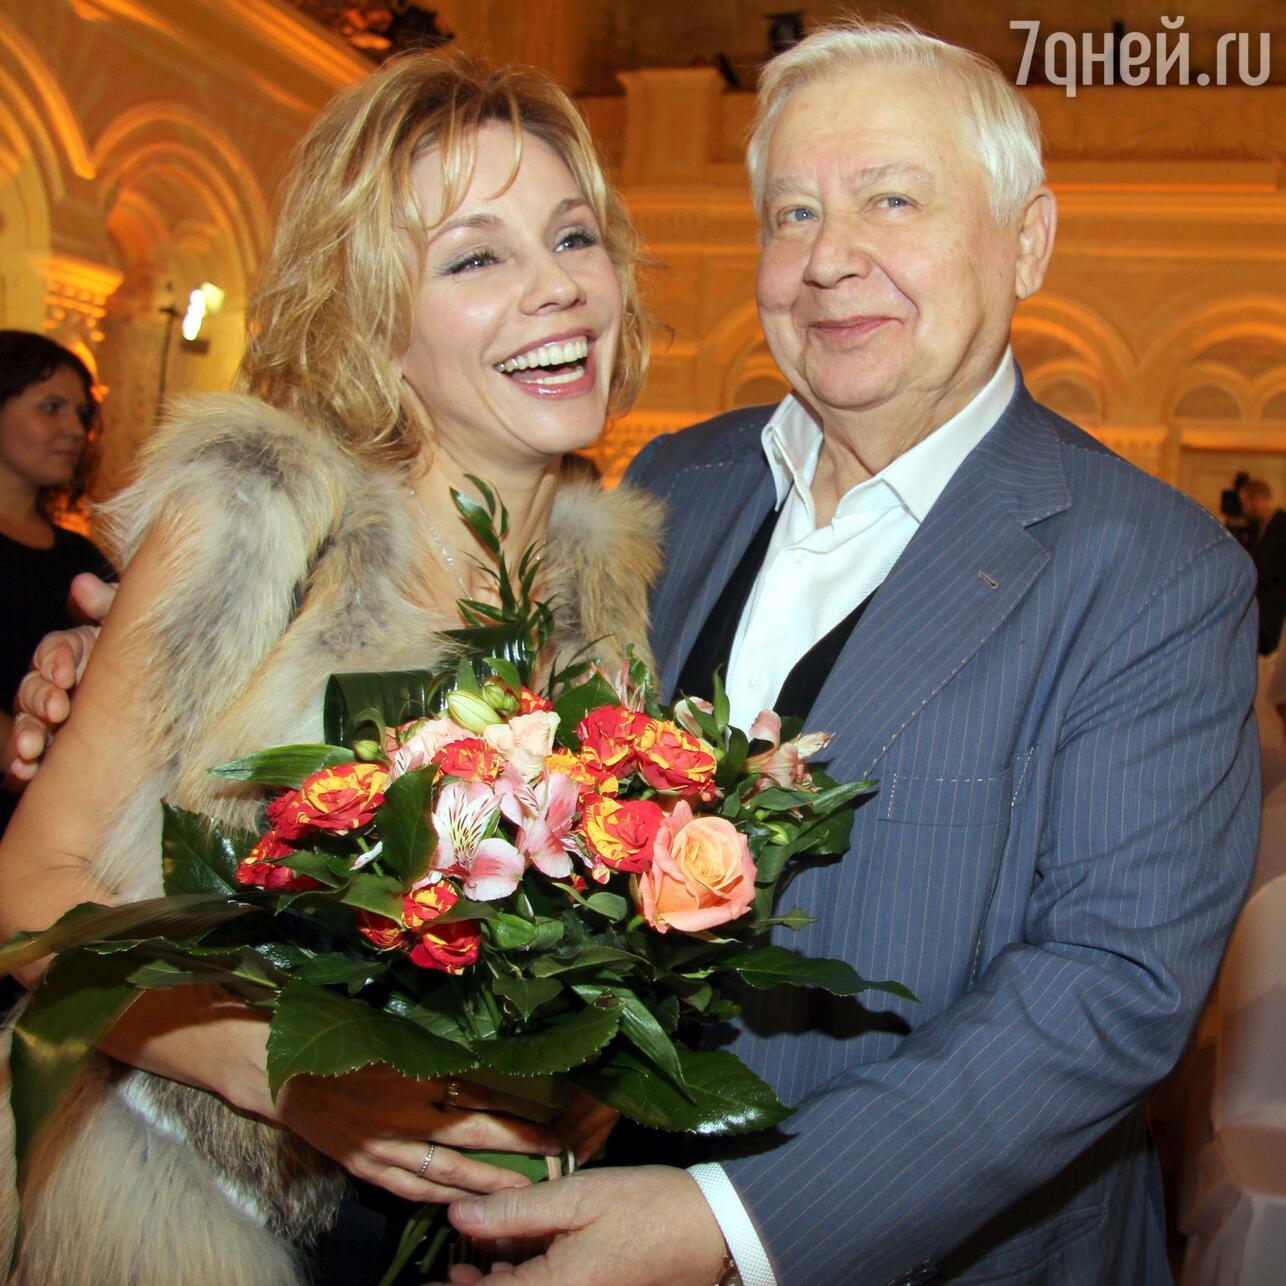 Олег Табаков и Марина Зудина — фото